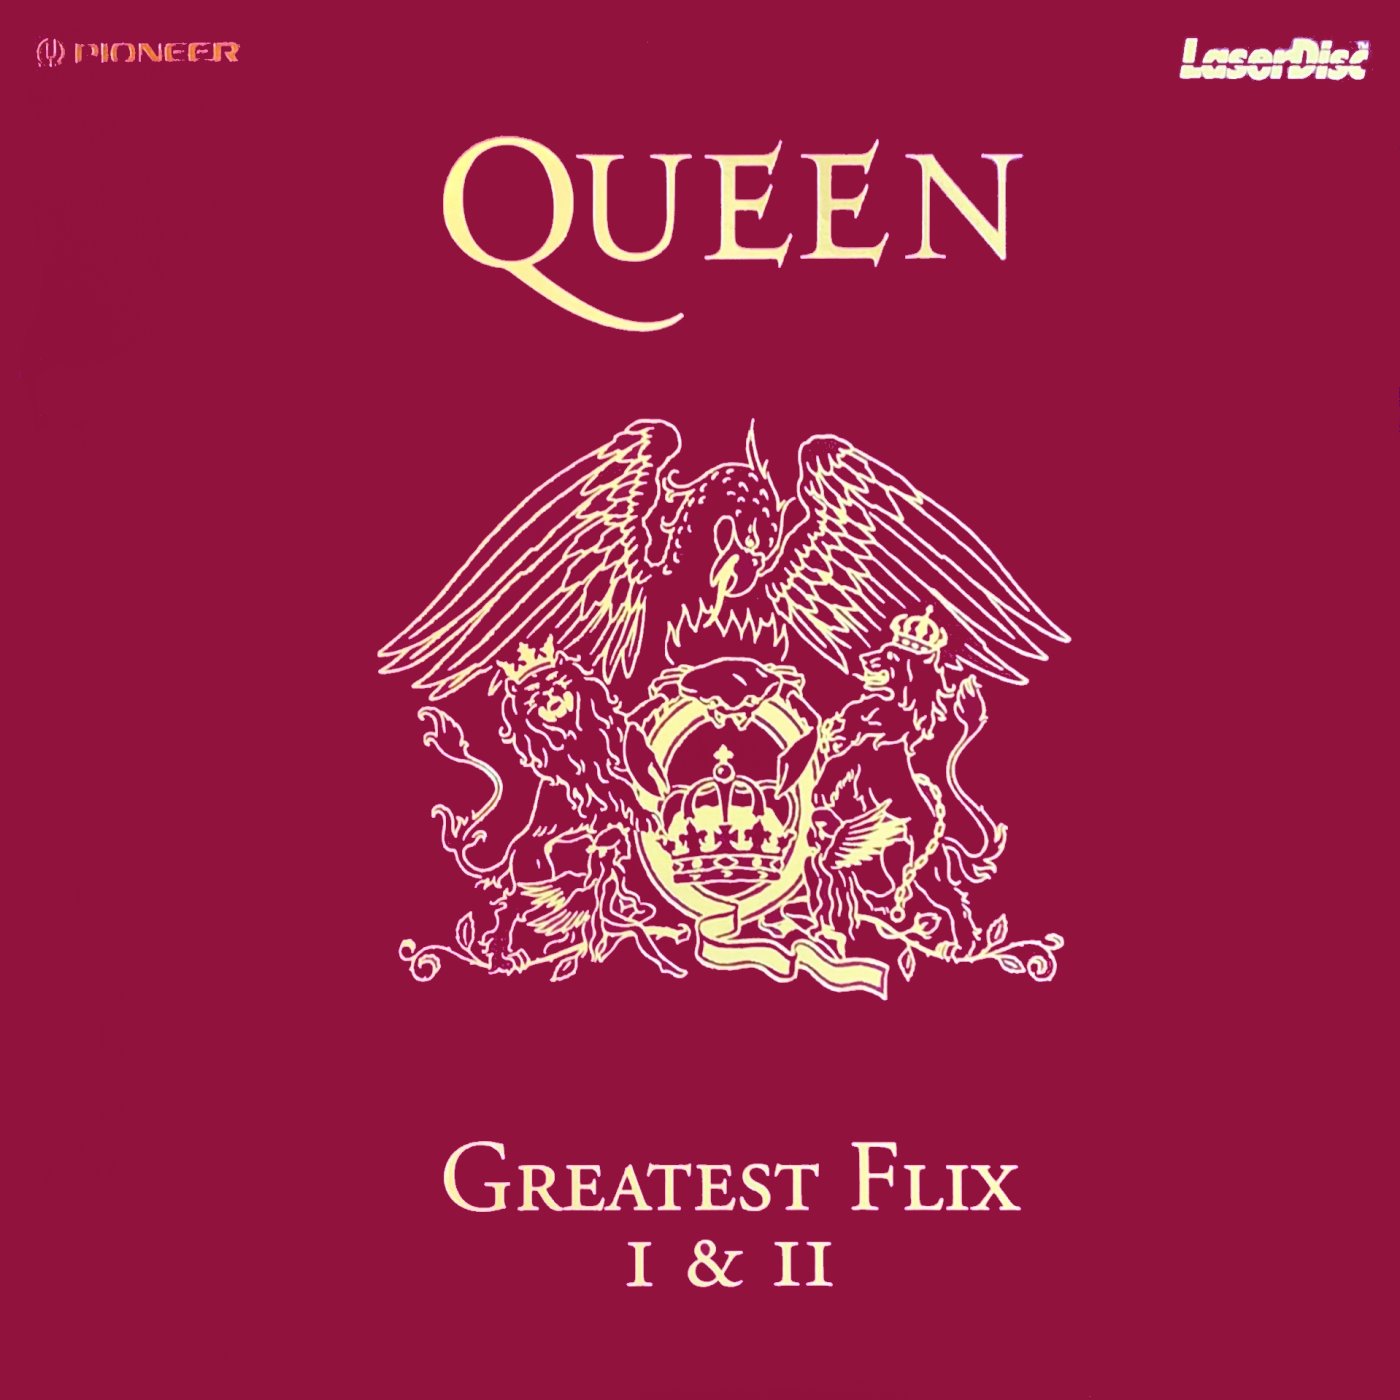 Cover - Queen's Greatest Flix I & II.jpg